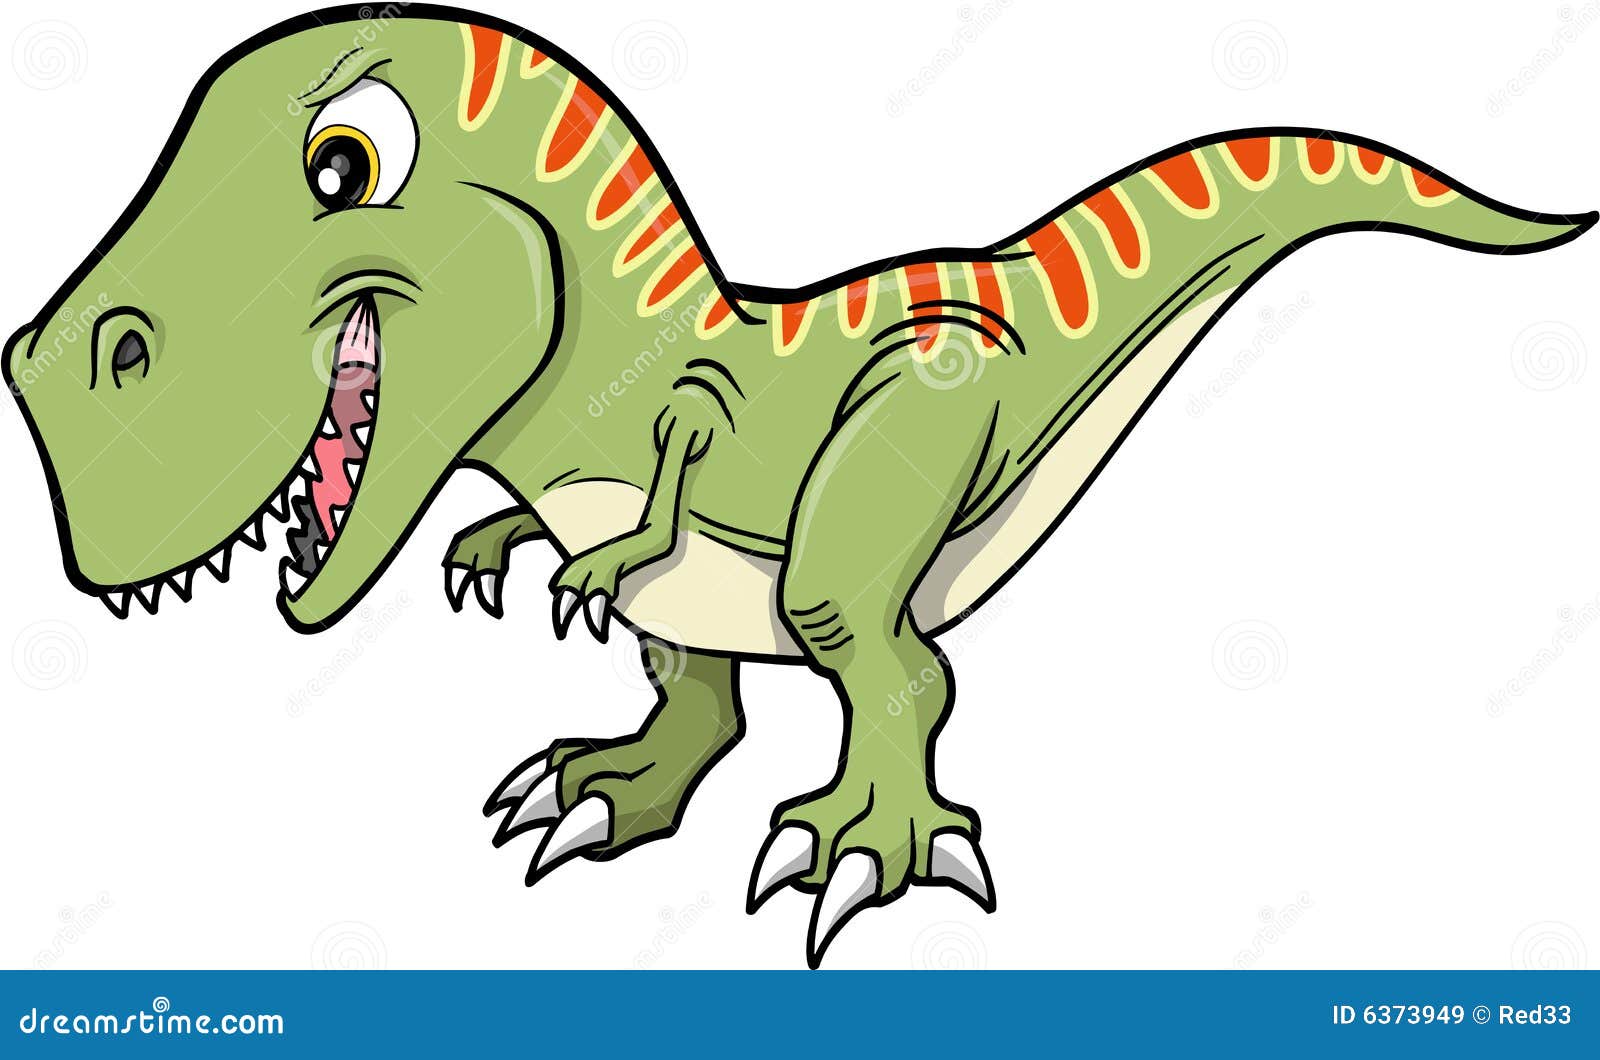 dinosaur clip art illustrations - photo #20